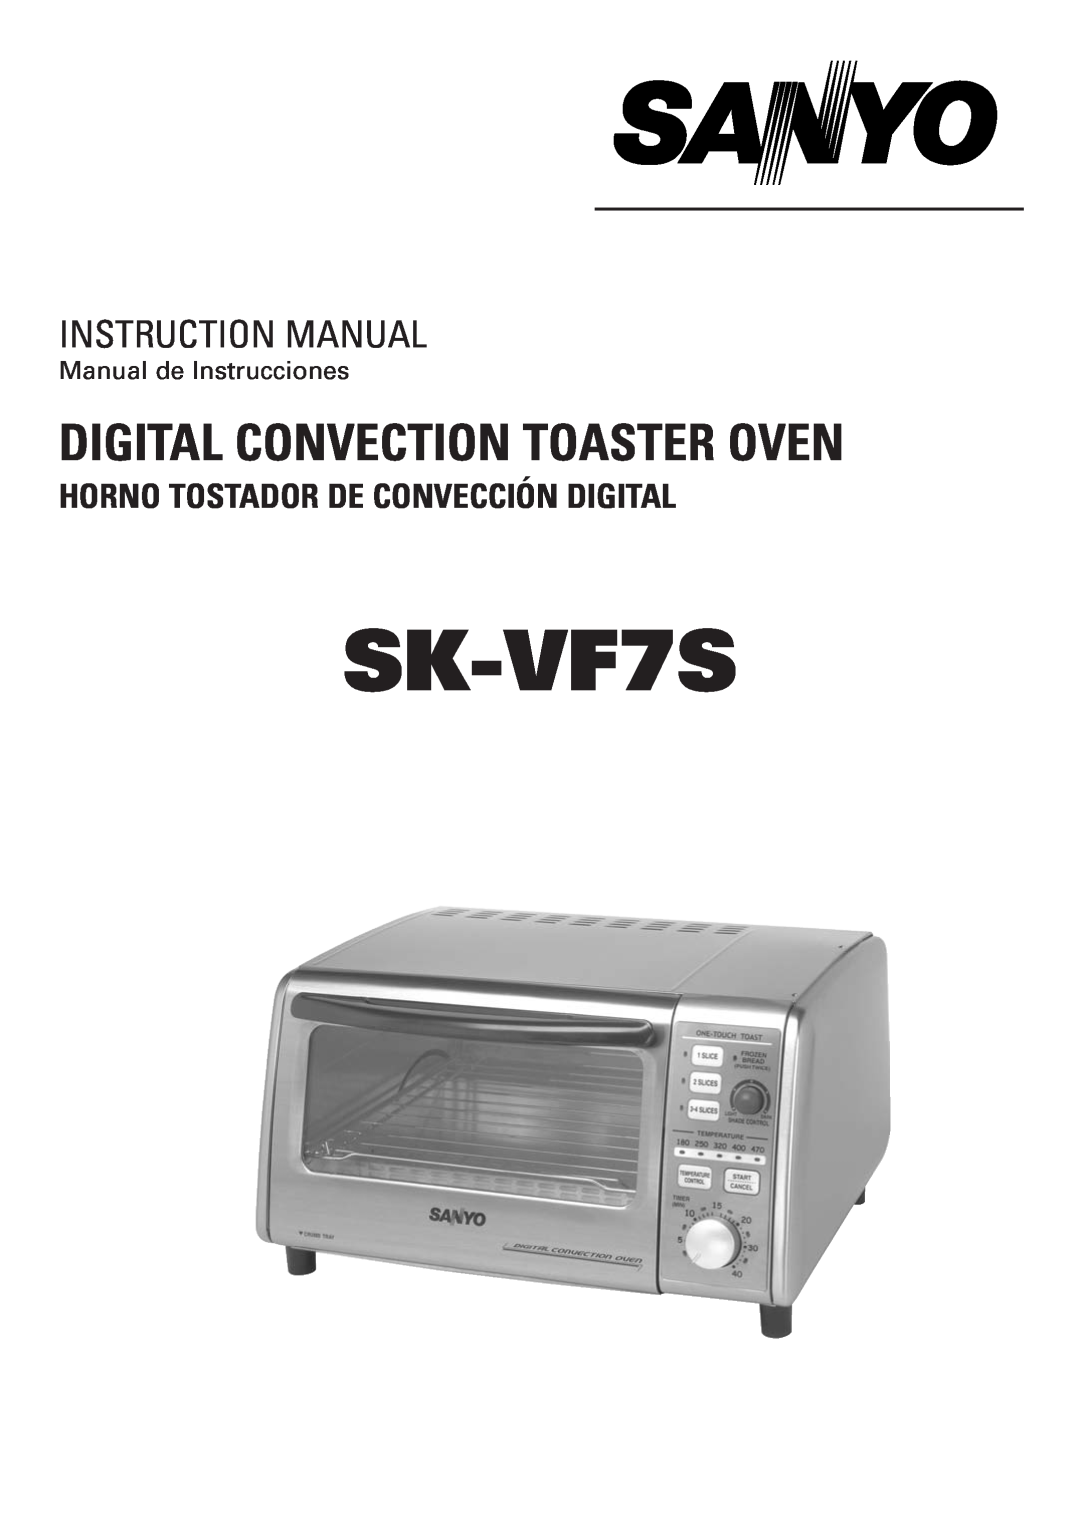 Sanyo SK-VF7S instruction manual Horno Tostador De Convección Digital, Digital Convection Toaster Oven 